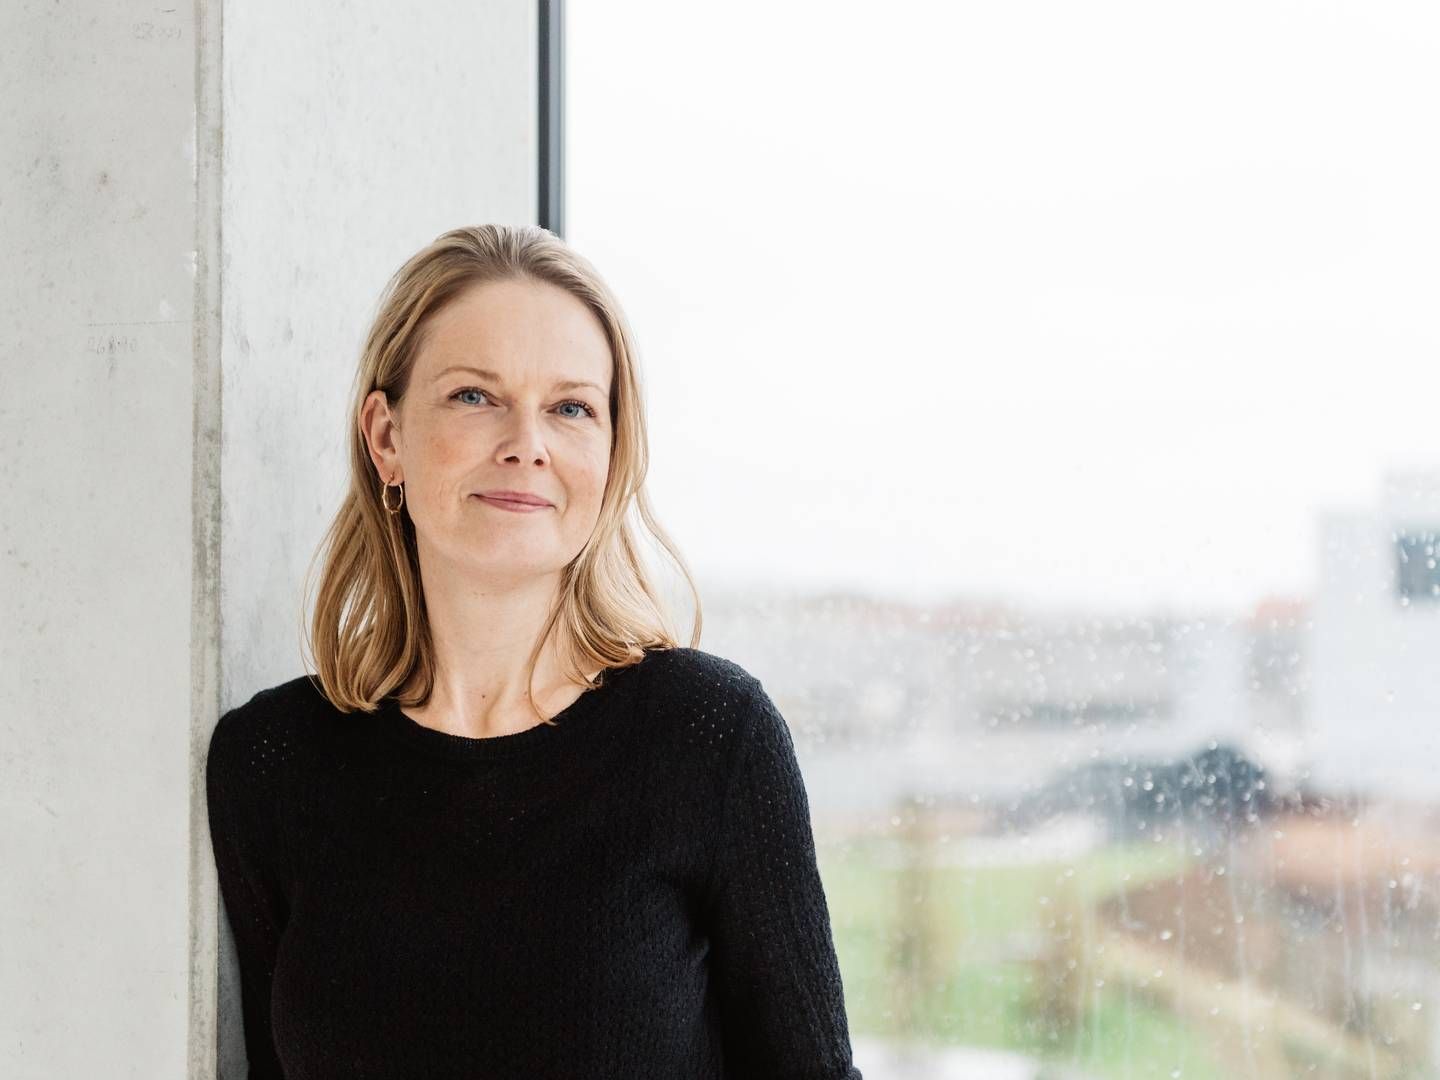 Hanne Salomonsen overtog posten som topchef for Gyldendal i september. Inden da havde hun siden 2008 været direktør for Gyldendal Uddannelse. | Foto: Pr/gyldendal